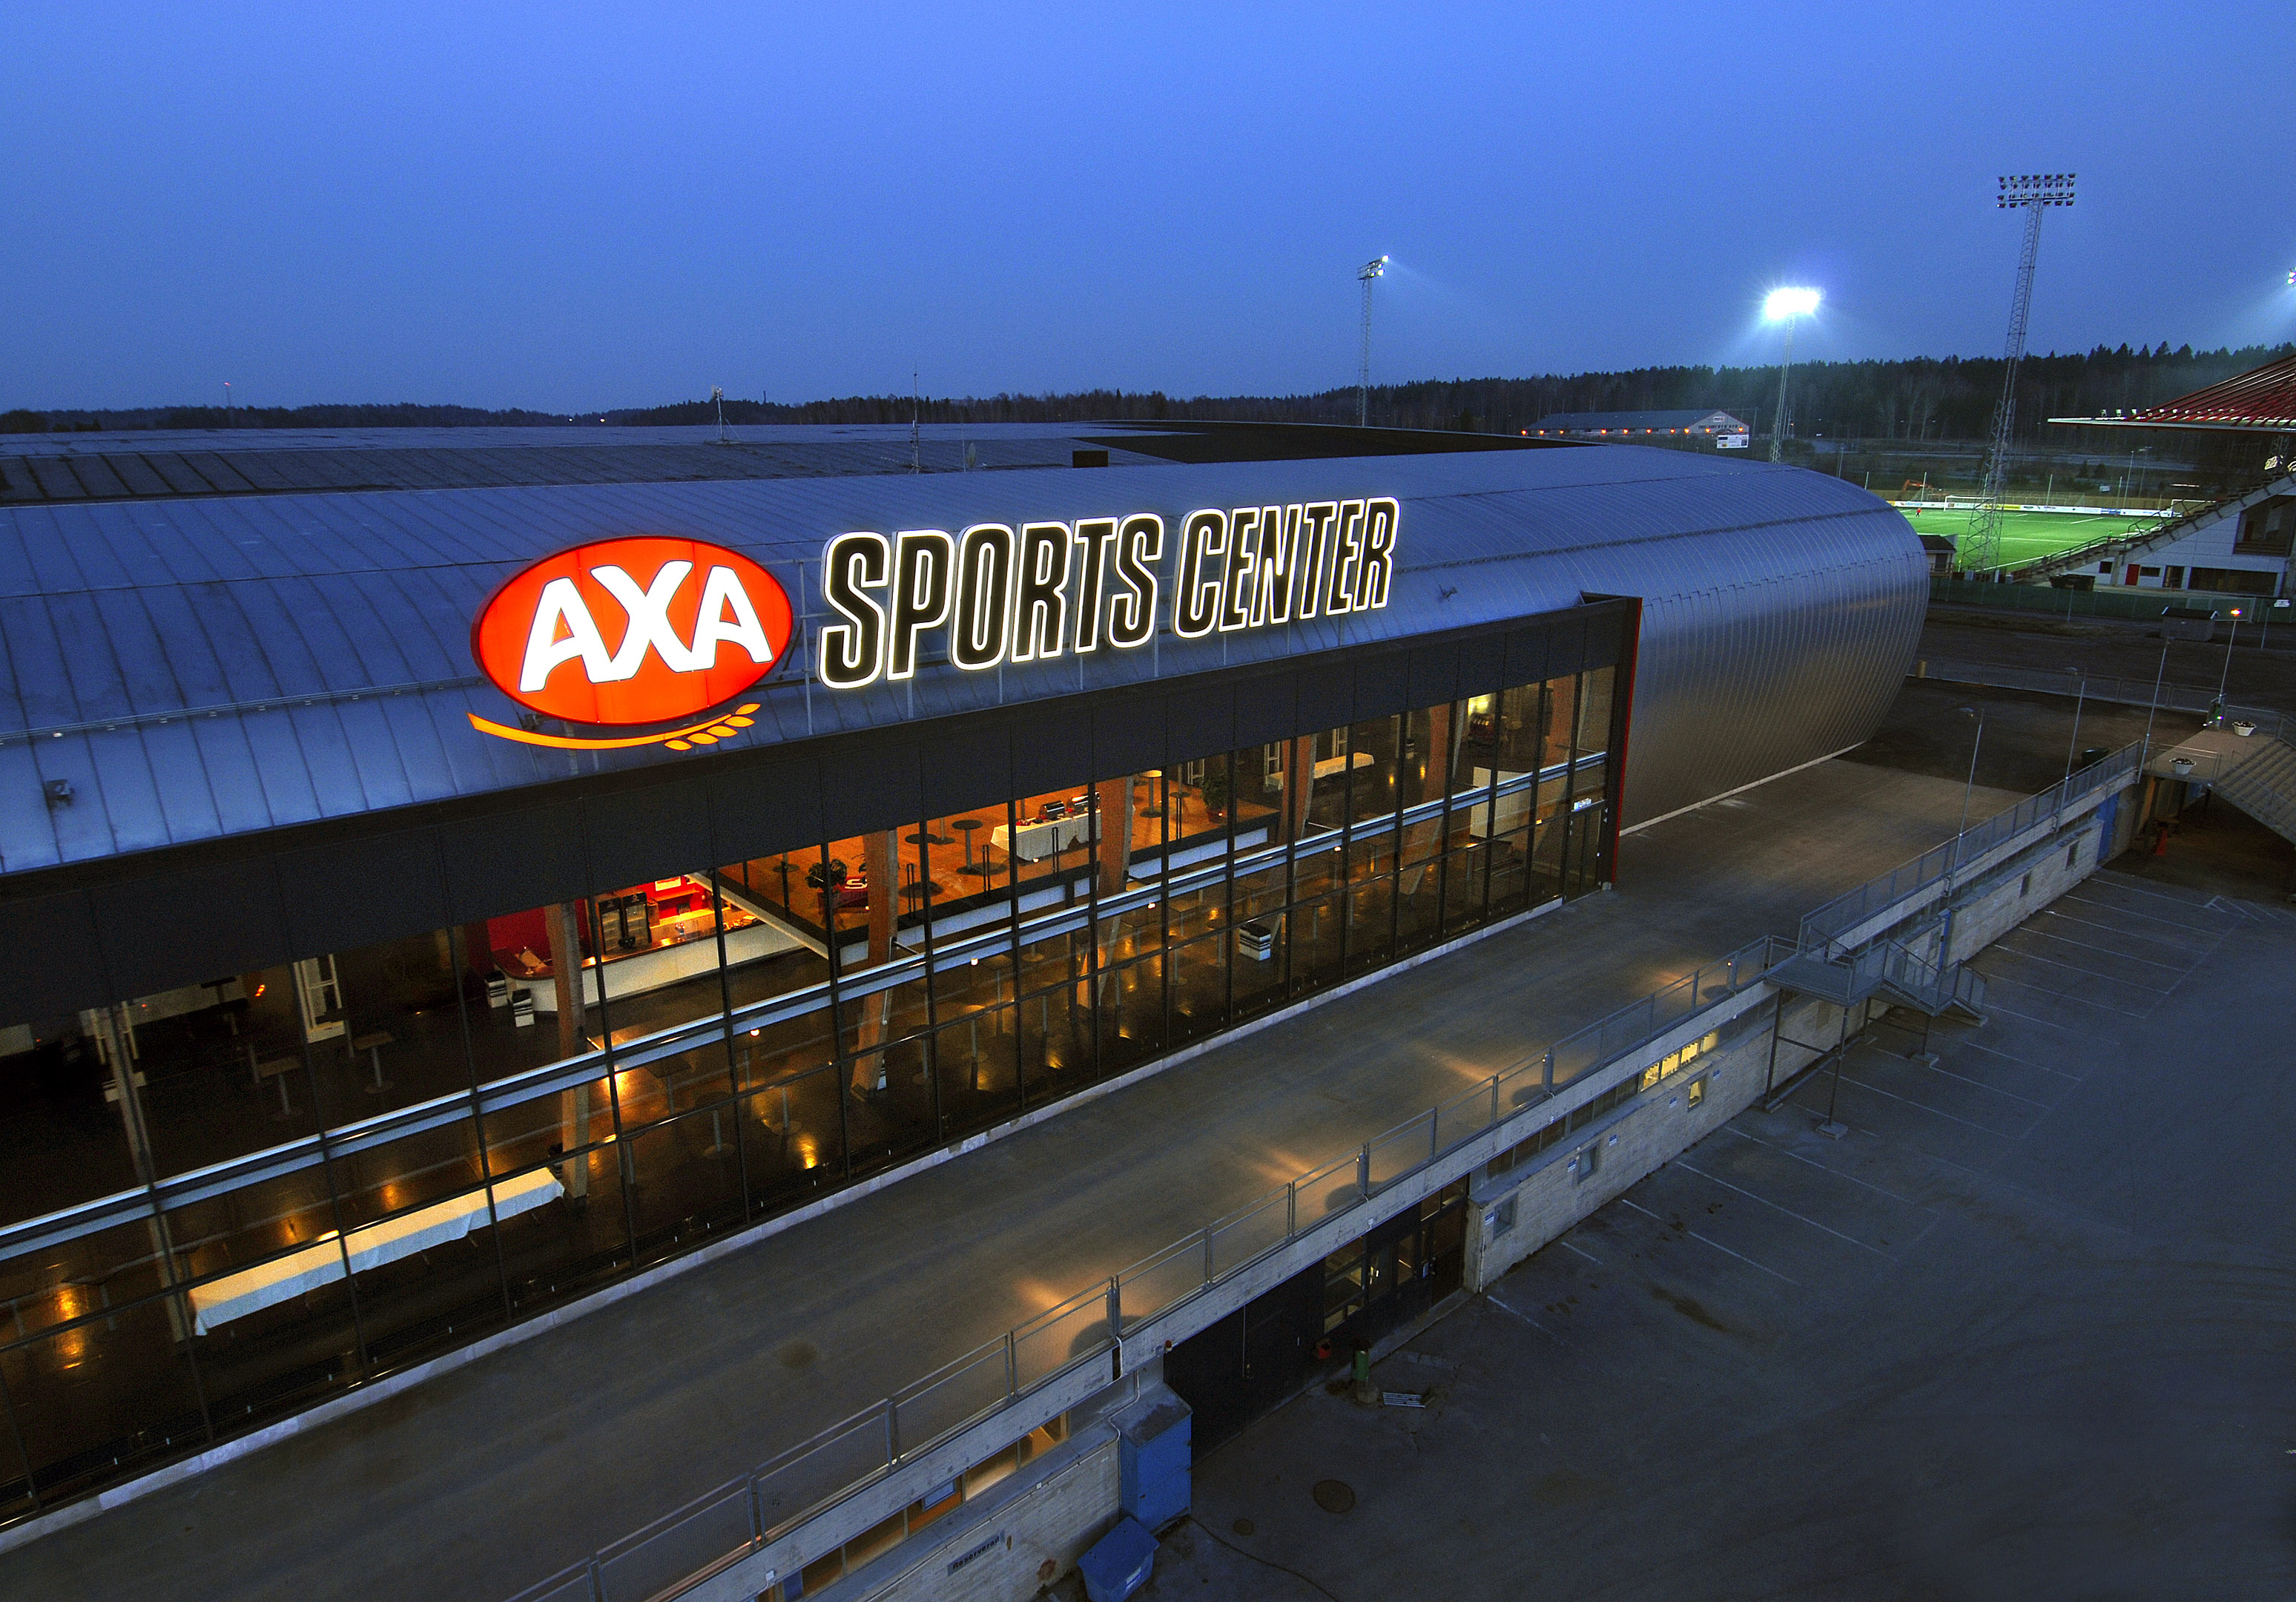 SSK:s hemmaarena Axa Sports Center som tar 6130 åskådare.